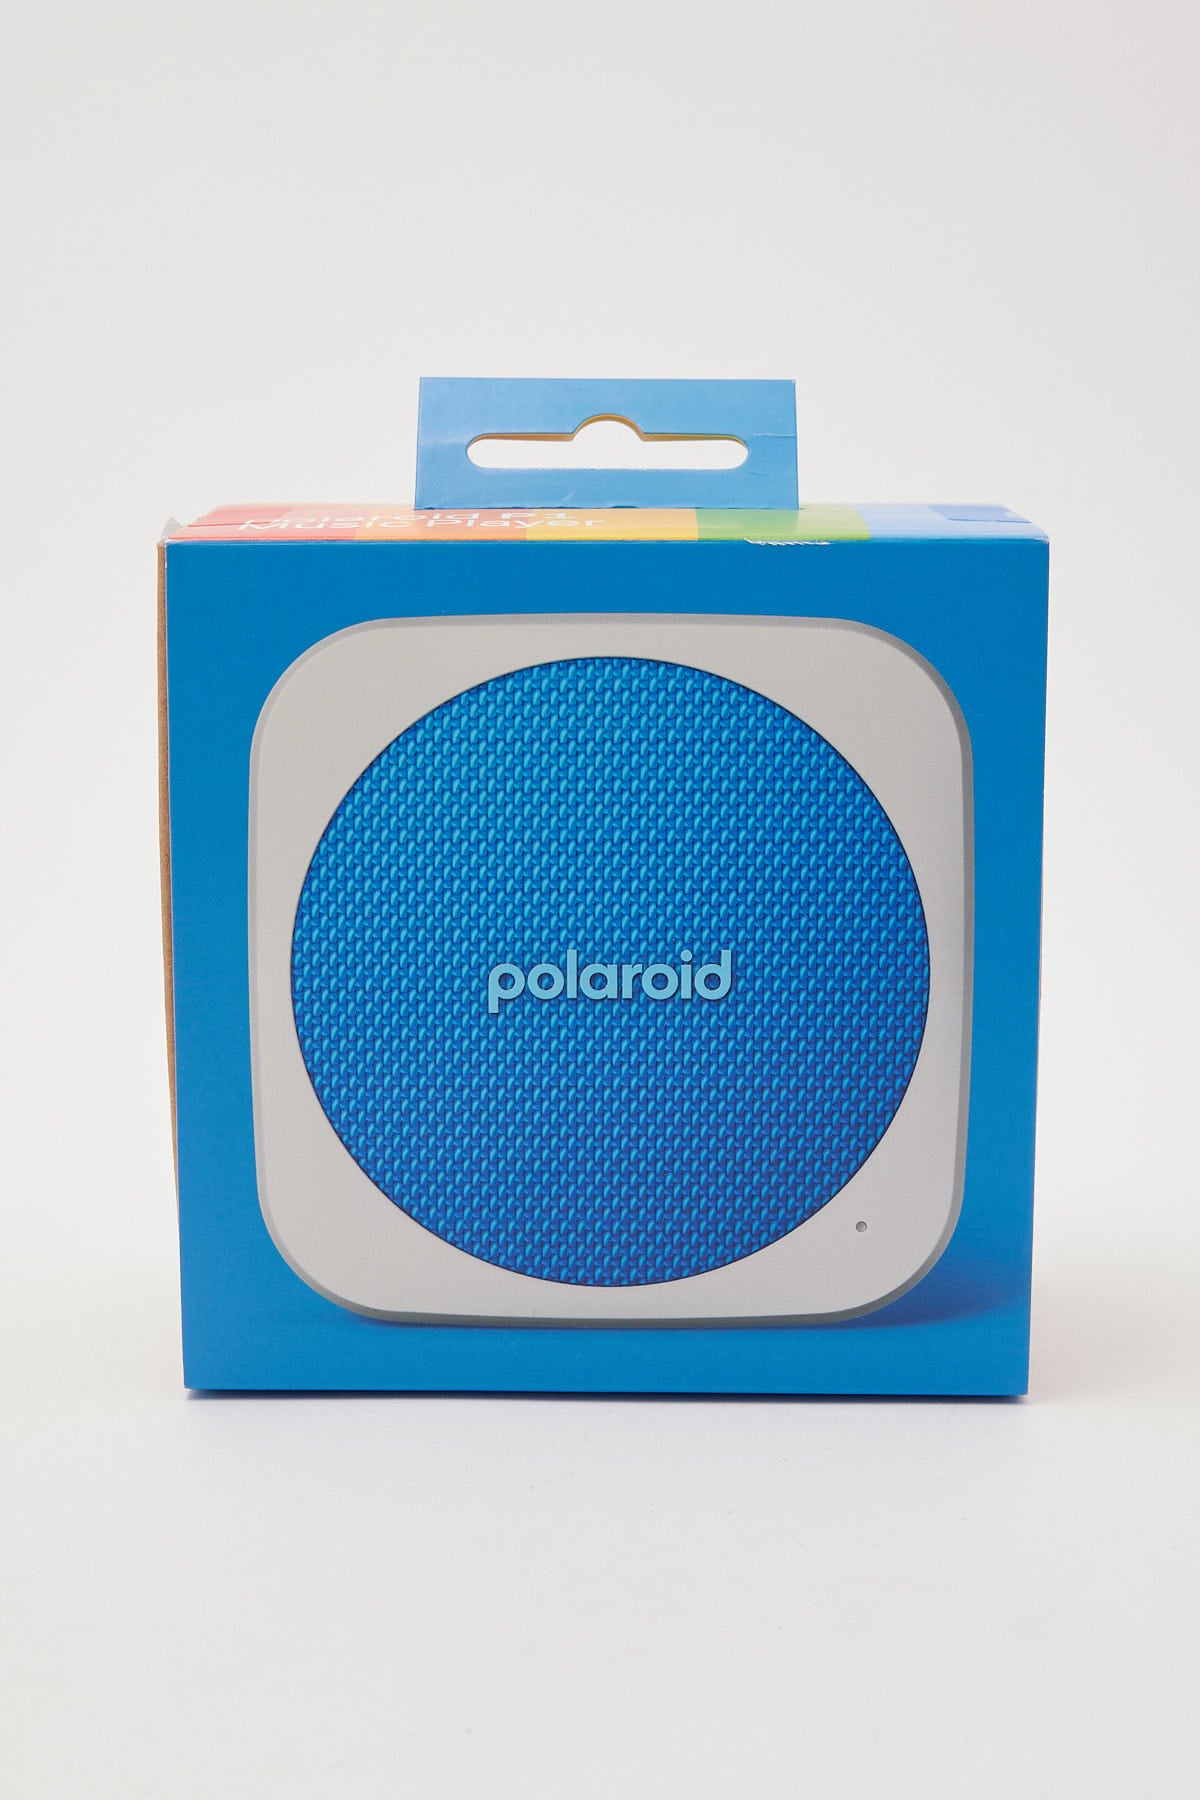 Polaroid Originals P1 Player Blue